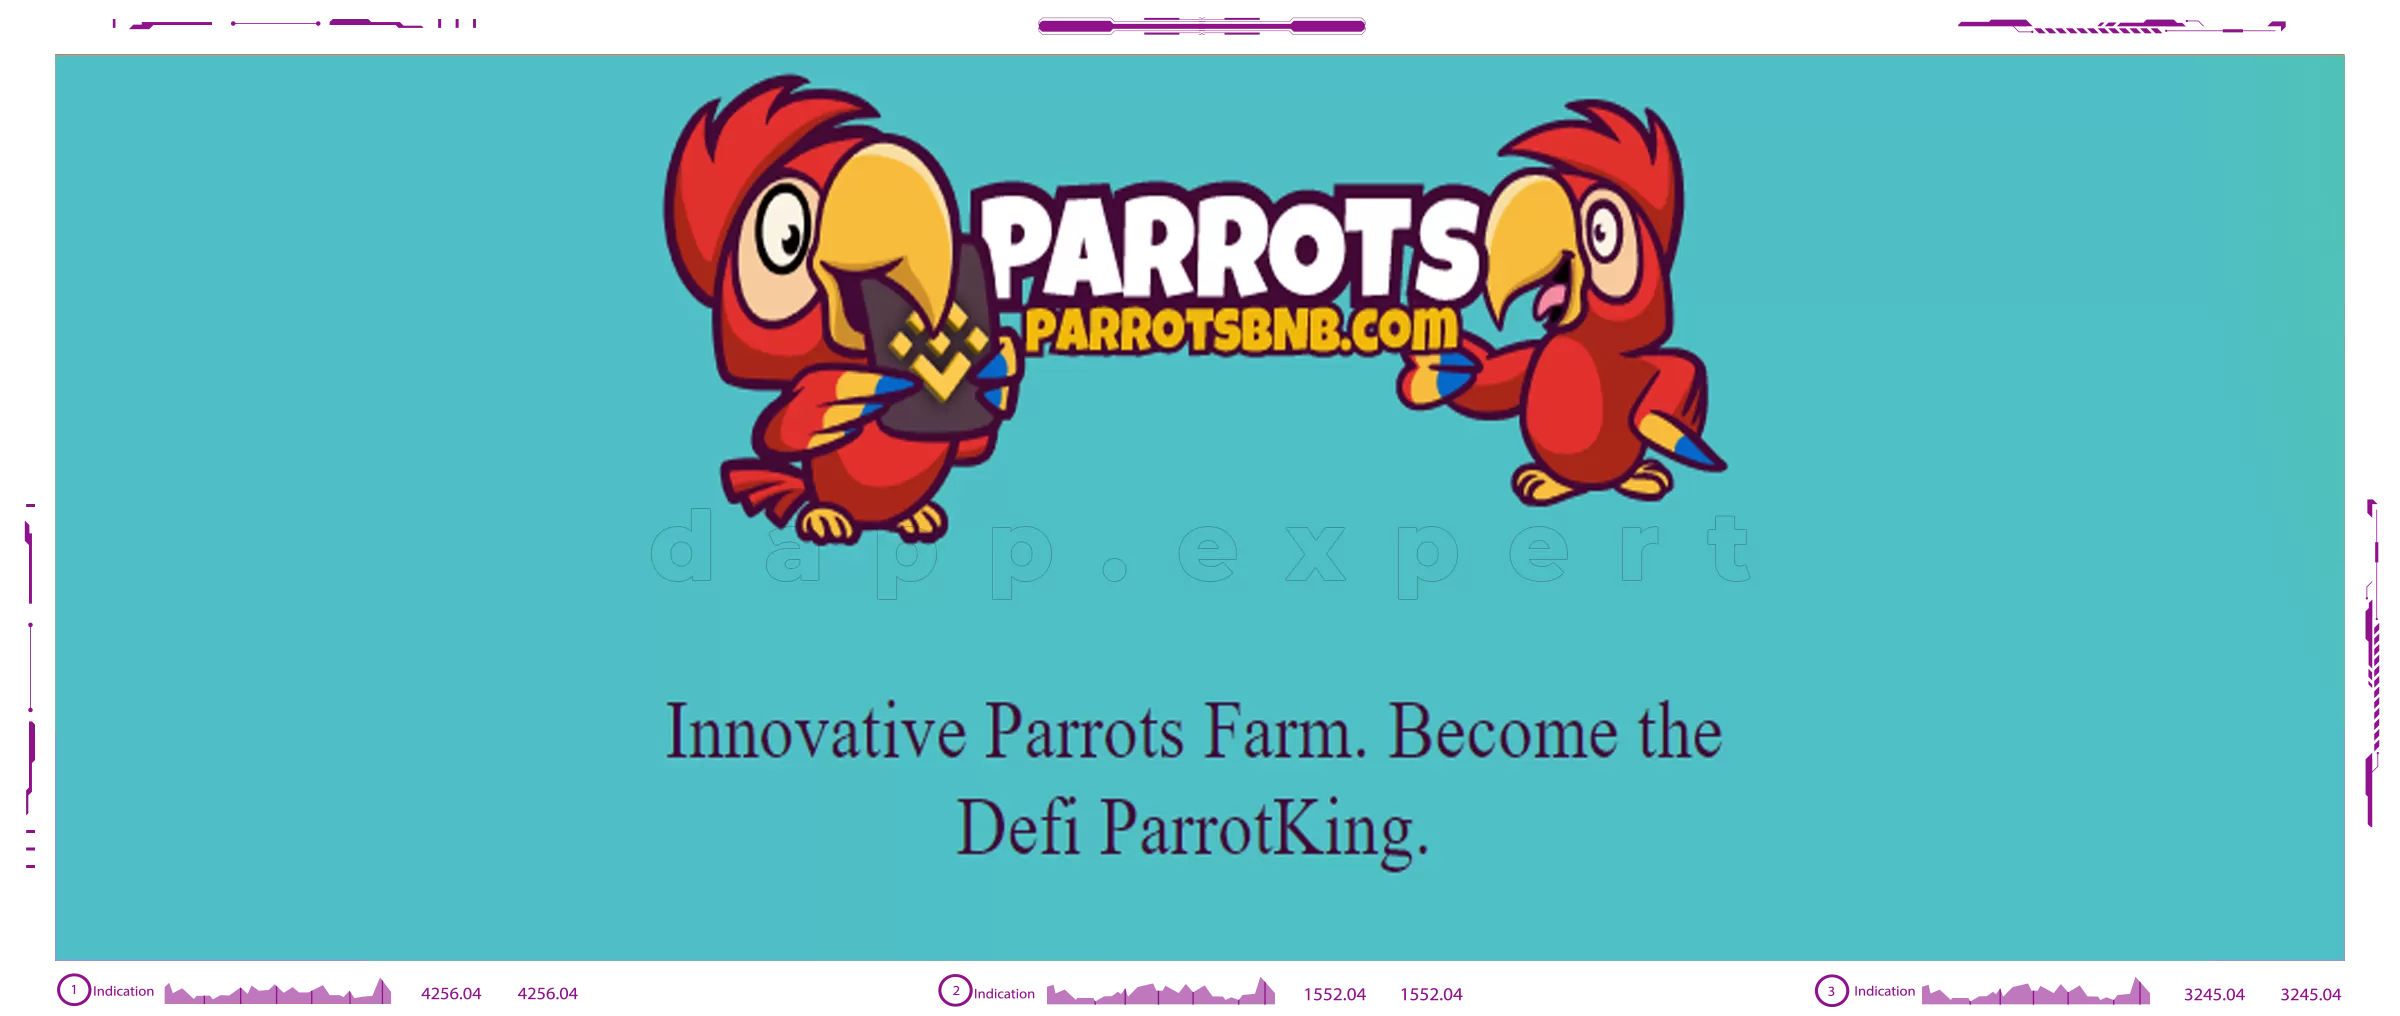 Dapp Parrots Miner